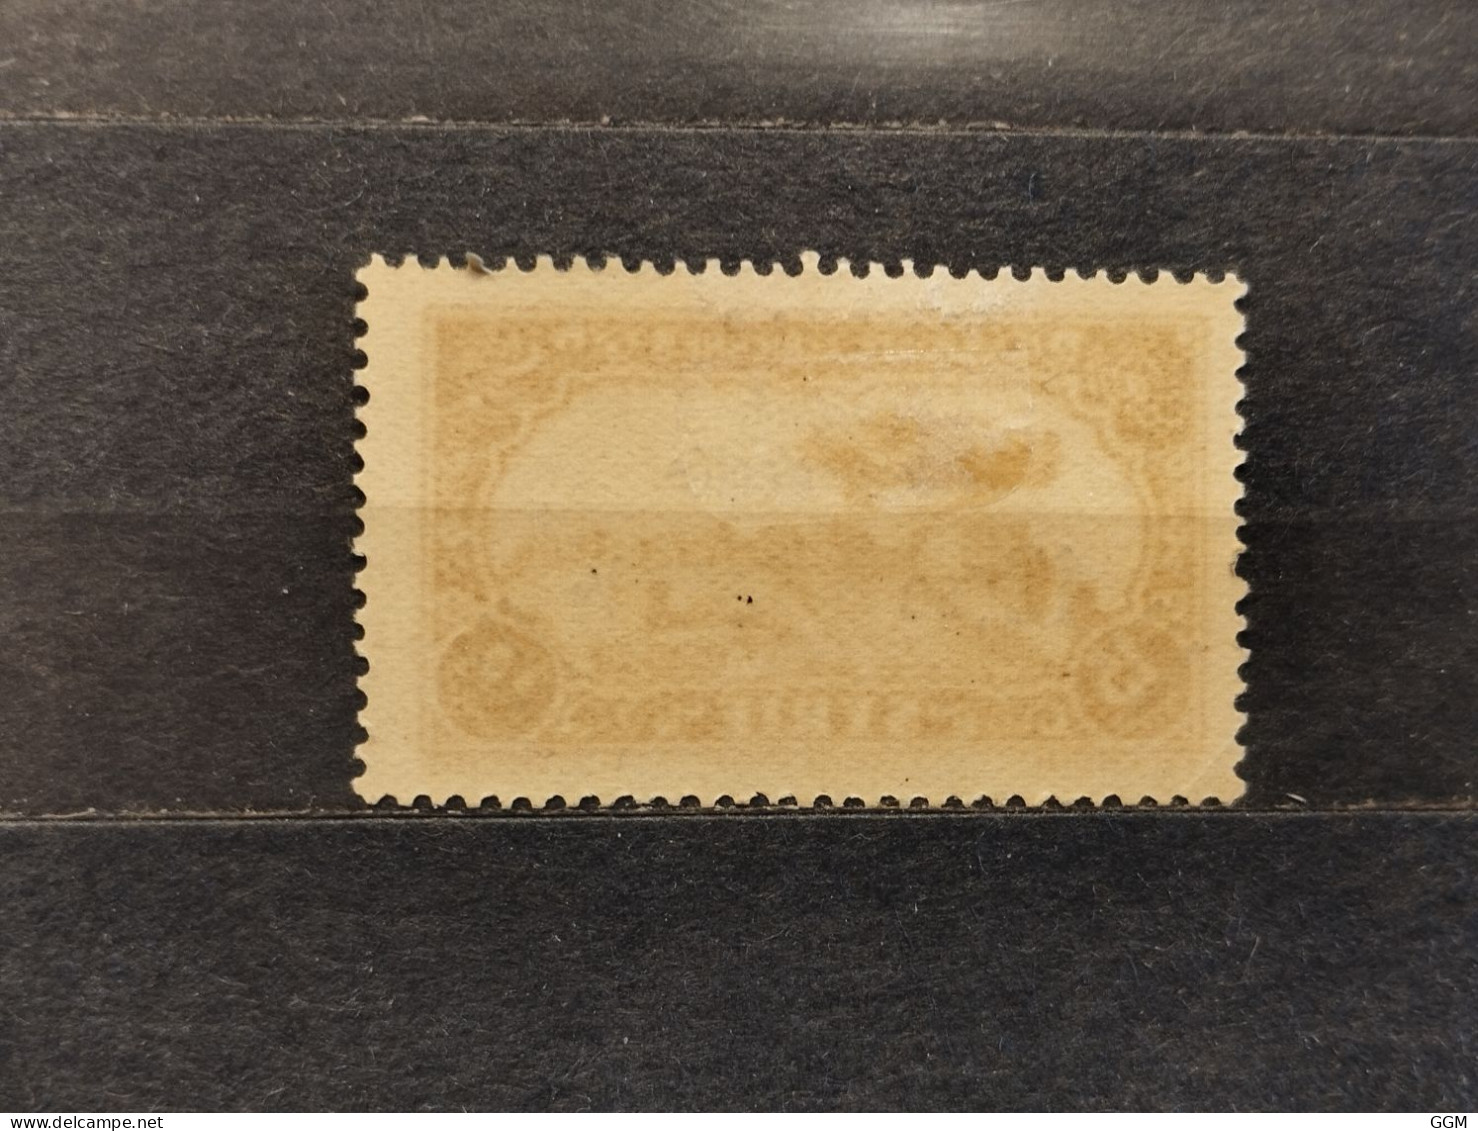 Francia/France. Syria/Syrie. 1938. Sandjak D'Alexandrette. Timbres De Syrie 1930/1932 Surchargés. MH - Unused Stamps